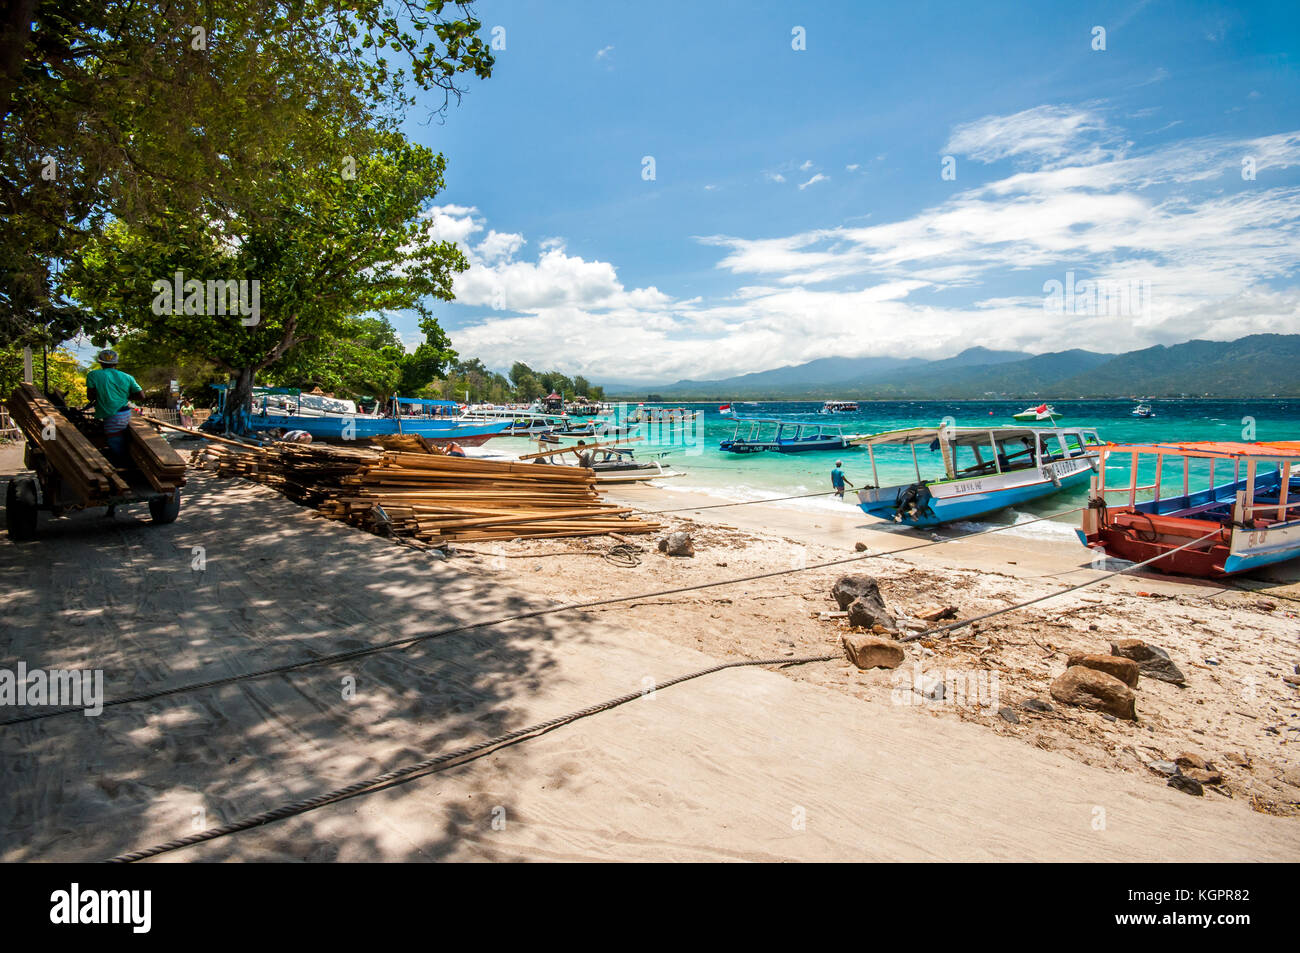 Gili Air Harbour, Indonesiani tradizionali barche ormeggiate fino, isole Gili, Indonesia, Asia sud-orientale, Asia Foto Stock